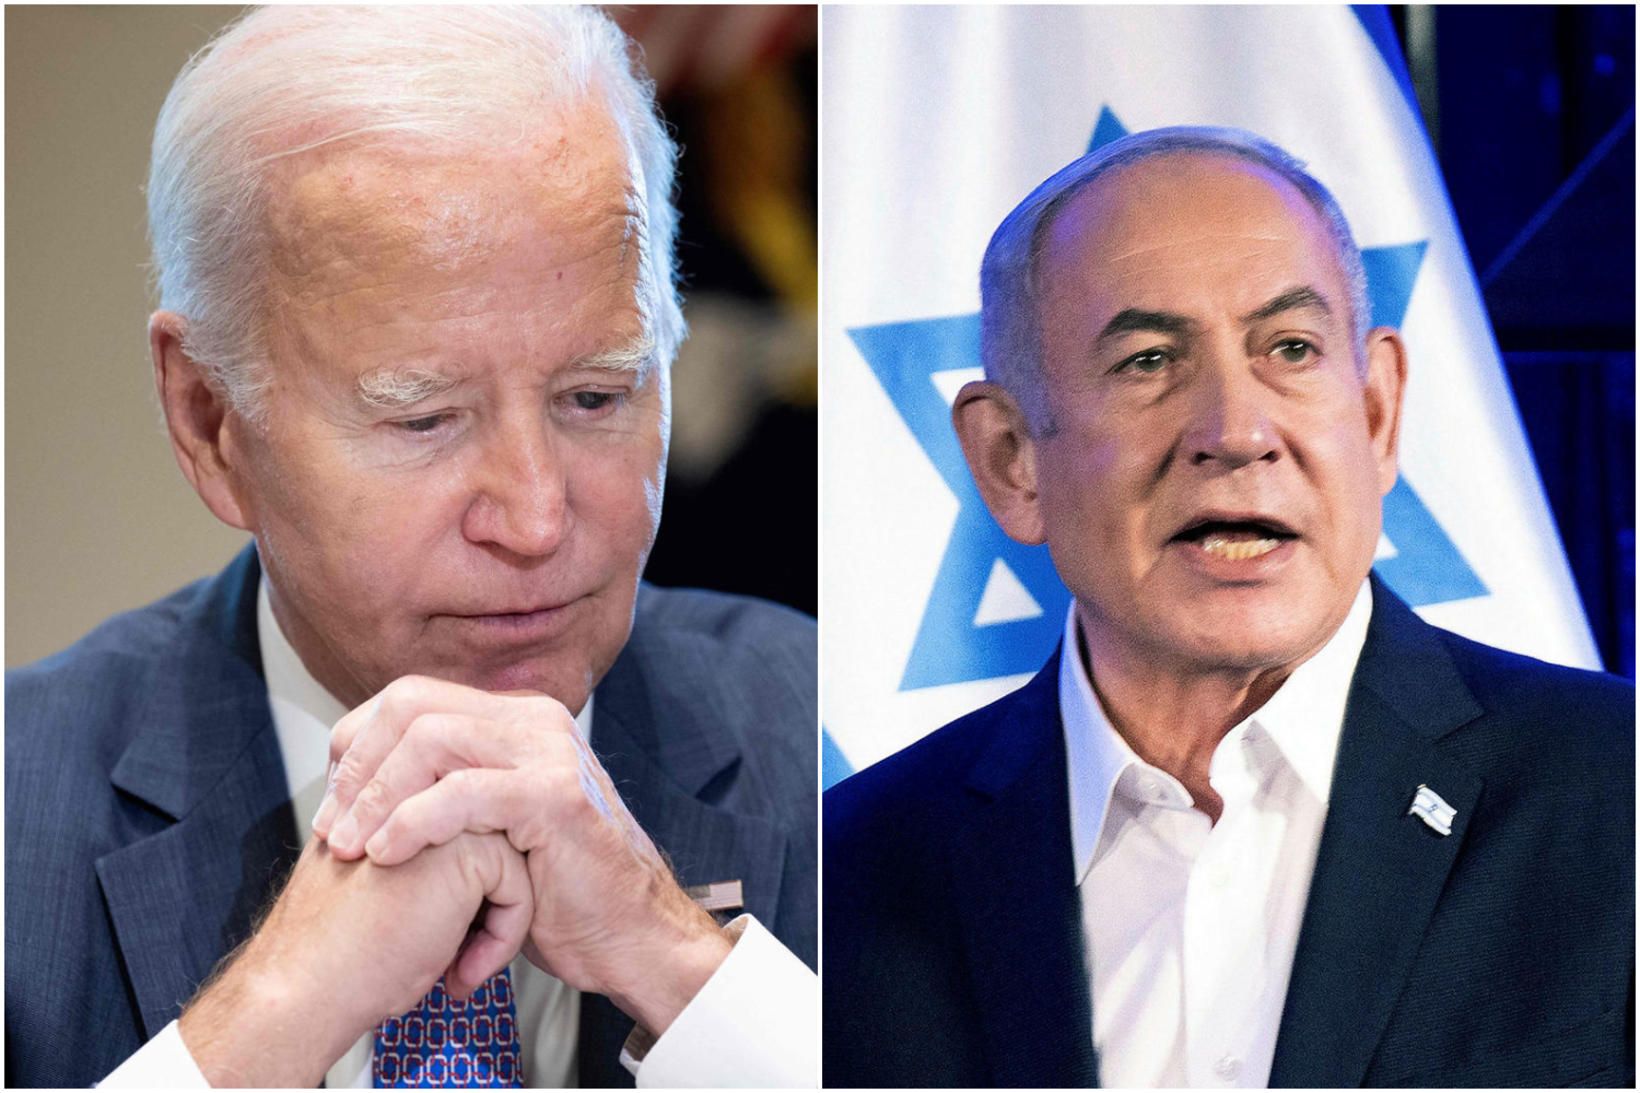 Pólitísk örlög Joe Biden og Benjamin Netanjahú eru sögð samofin.